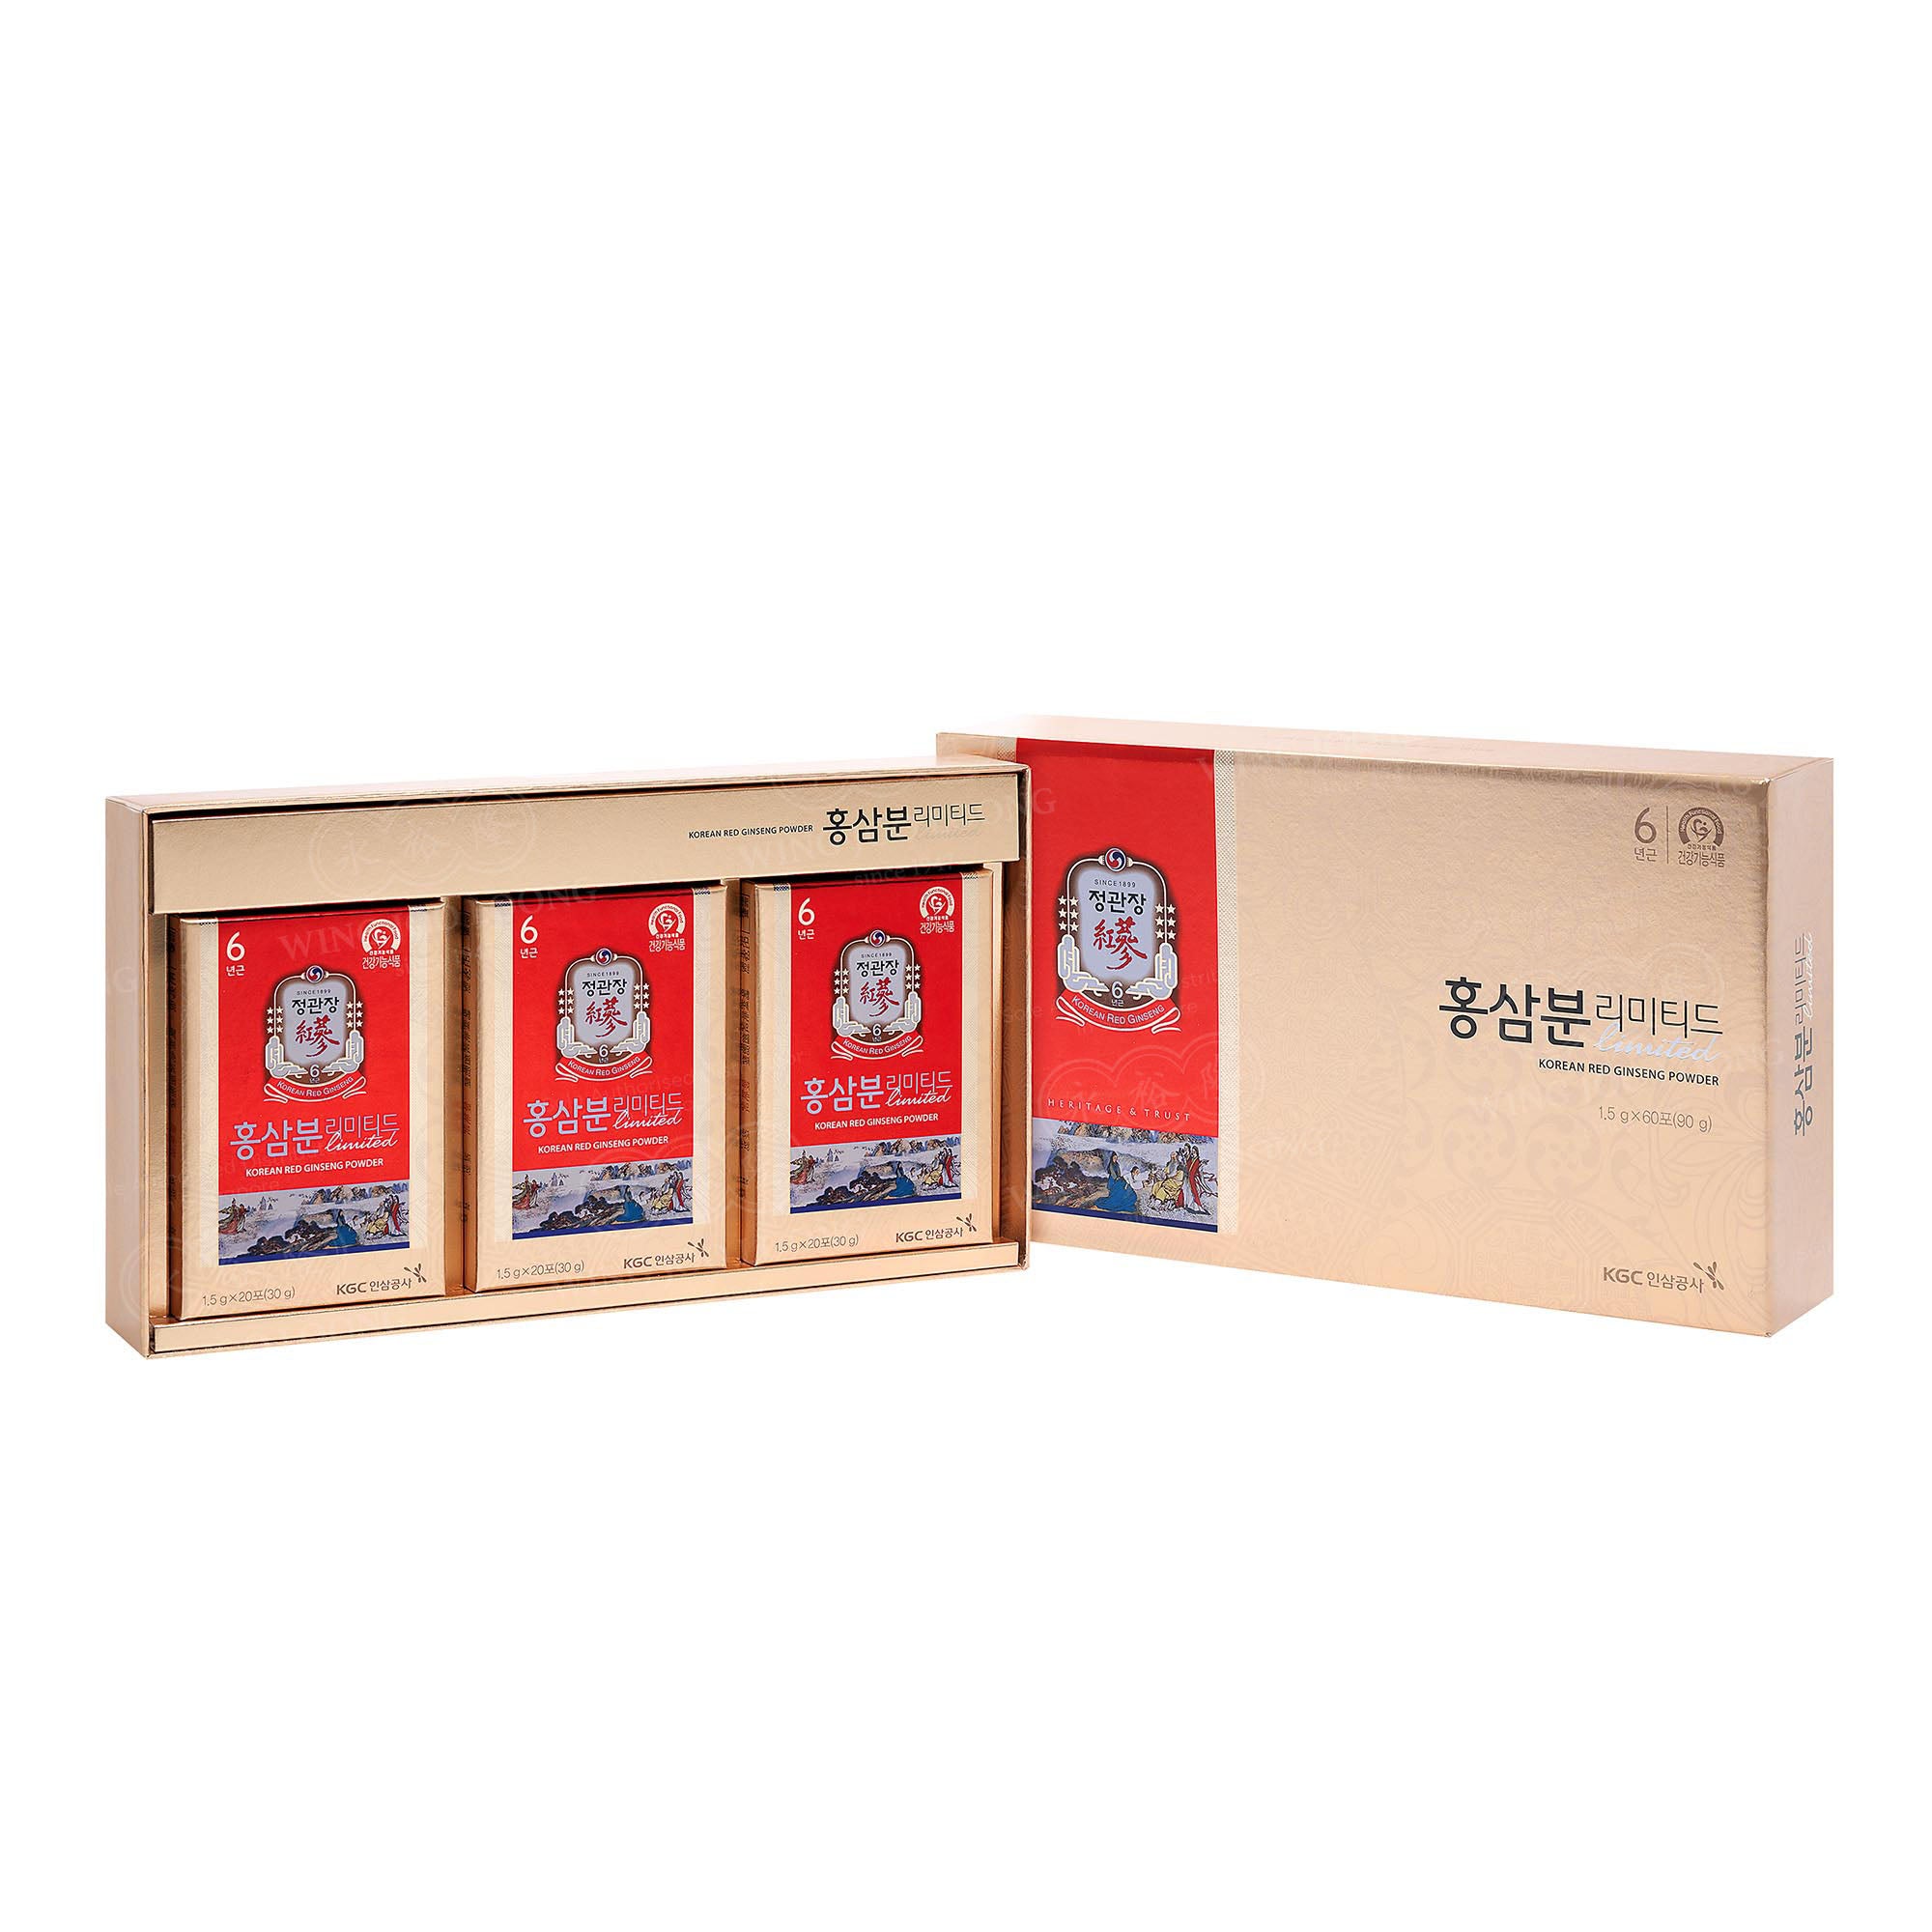 Cheong Kwan Jang Korean Red Ginseng Powder Limited 高丽参粉条装